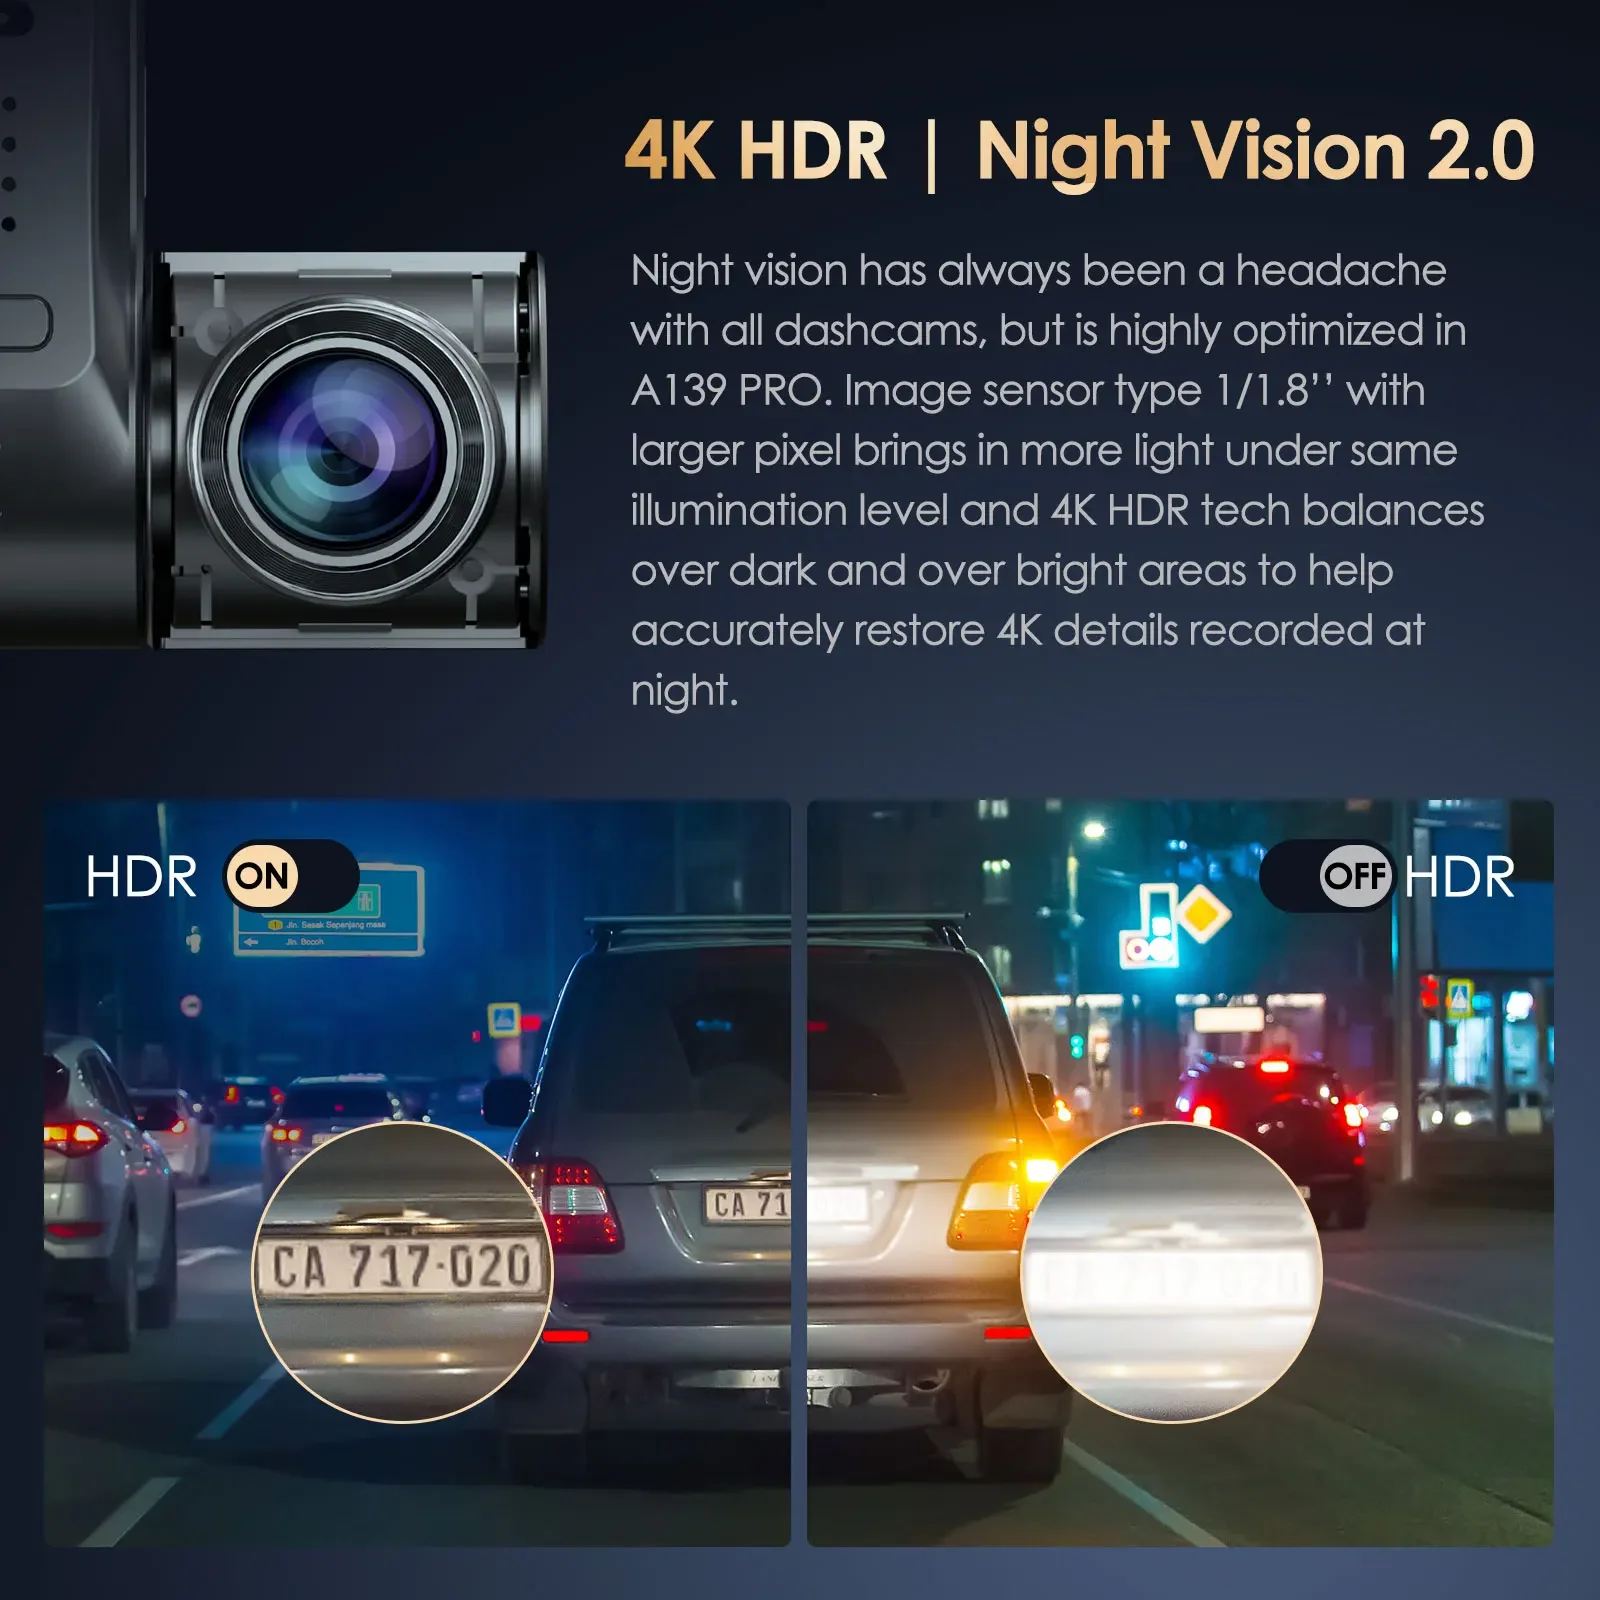 VIOFO-Cámara de salpicadero A139 Pro 4K HDR, Sensor STARVIS 2, cámara delantera y trasera para coche, Ultra HD, 4K + 1080P, súper visión nocturna, WiFi 5GHz, GPS